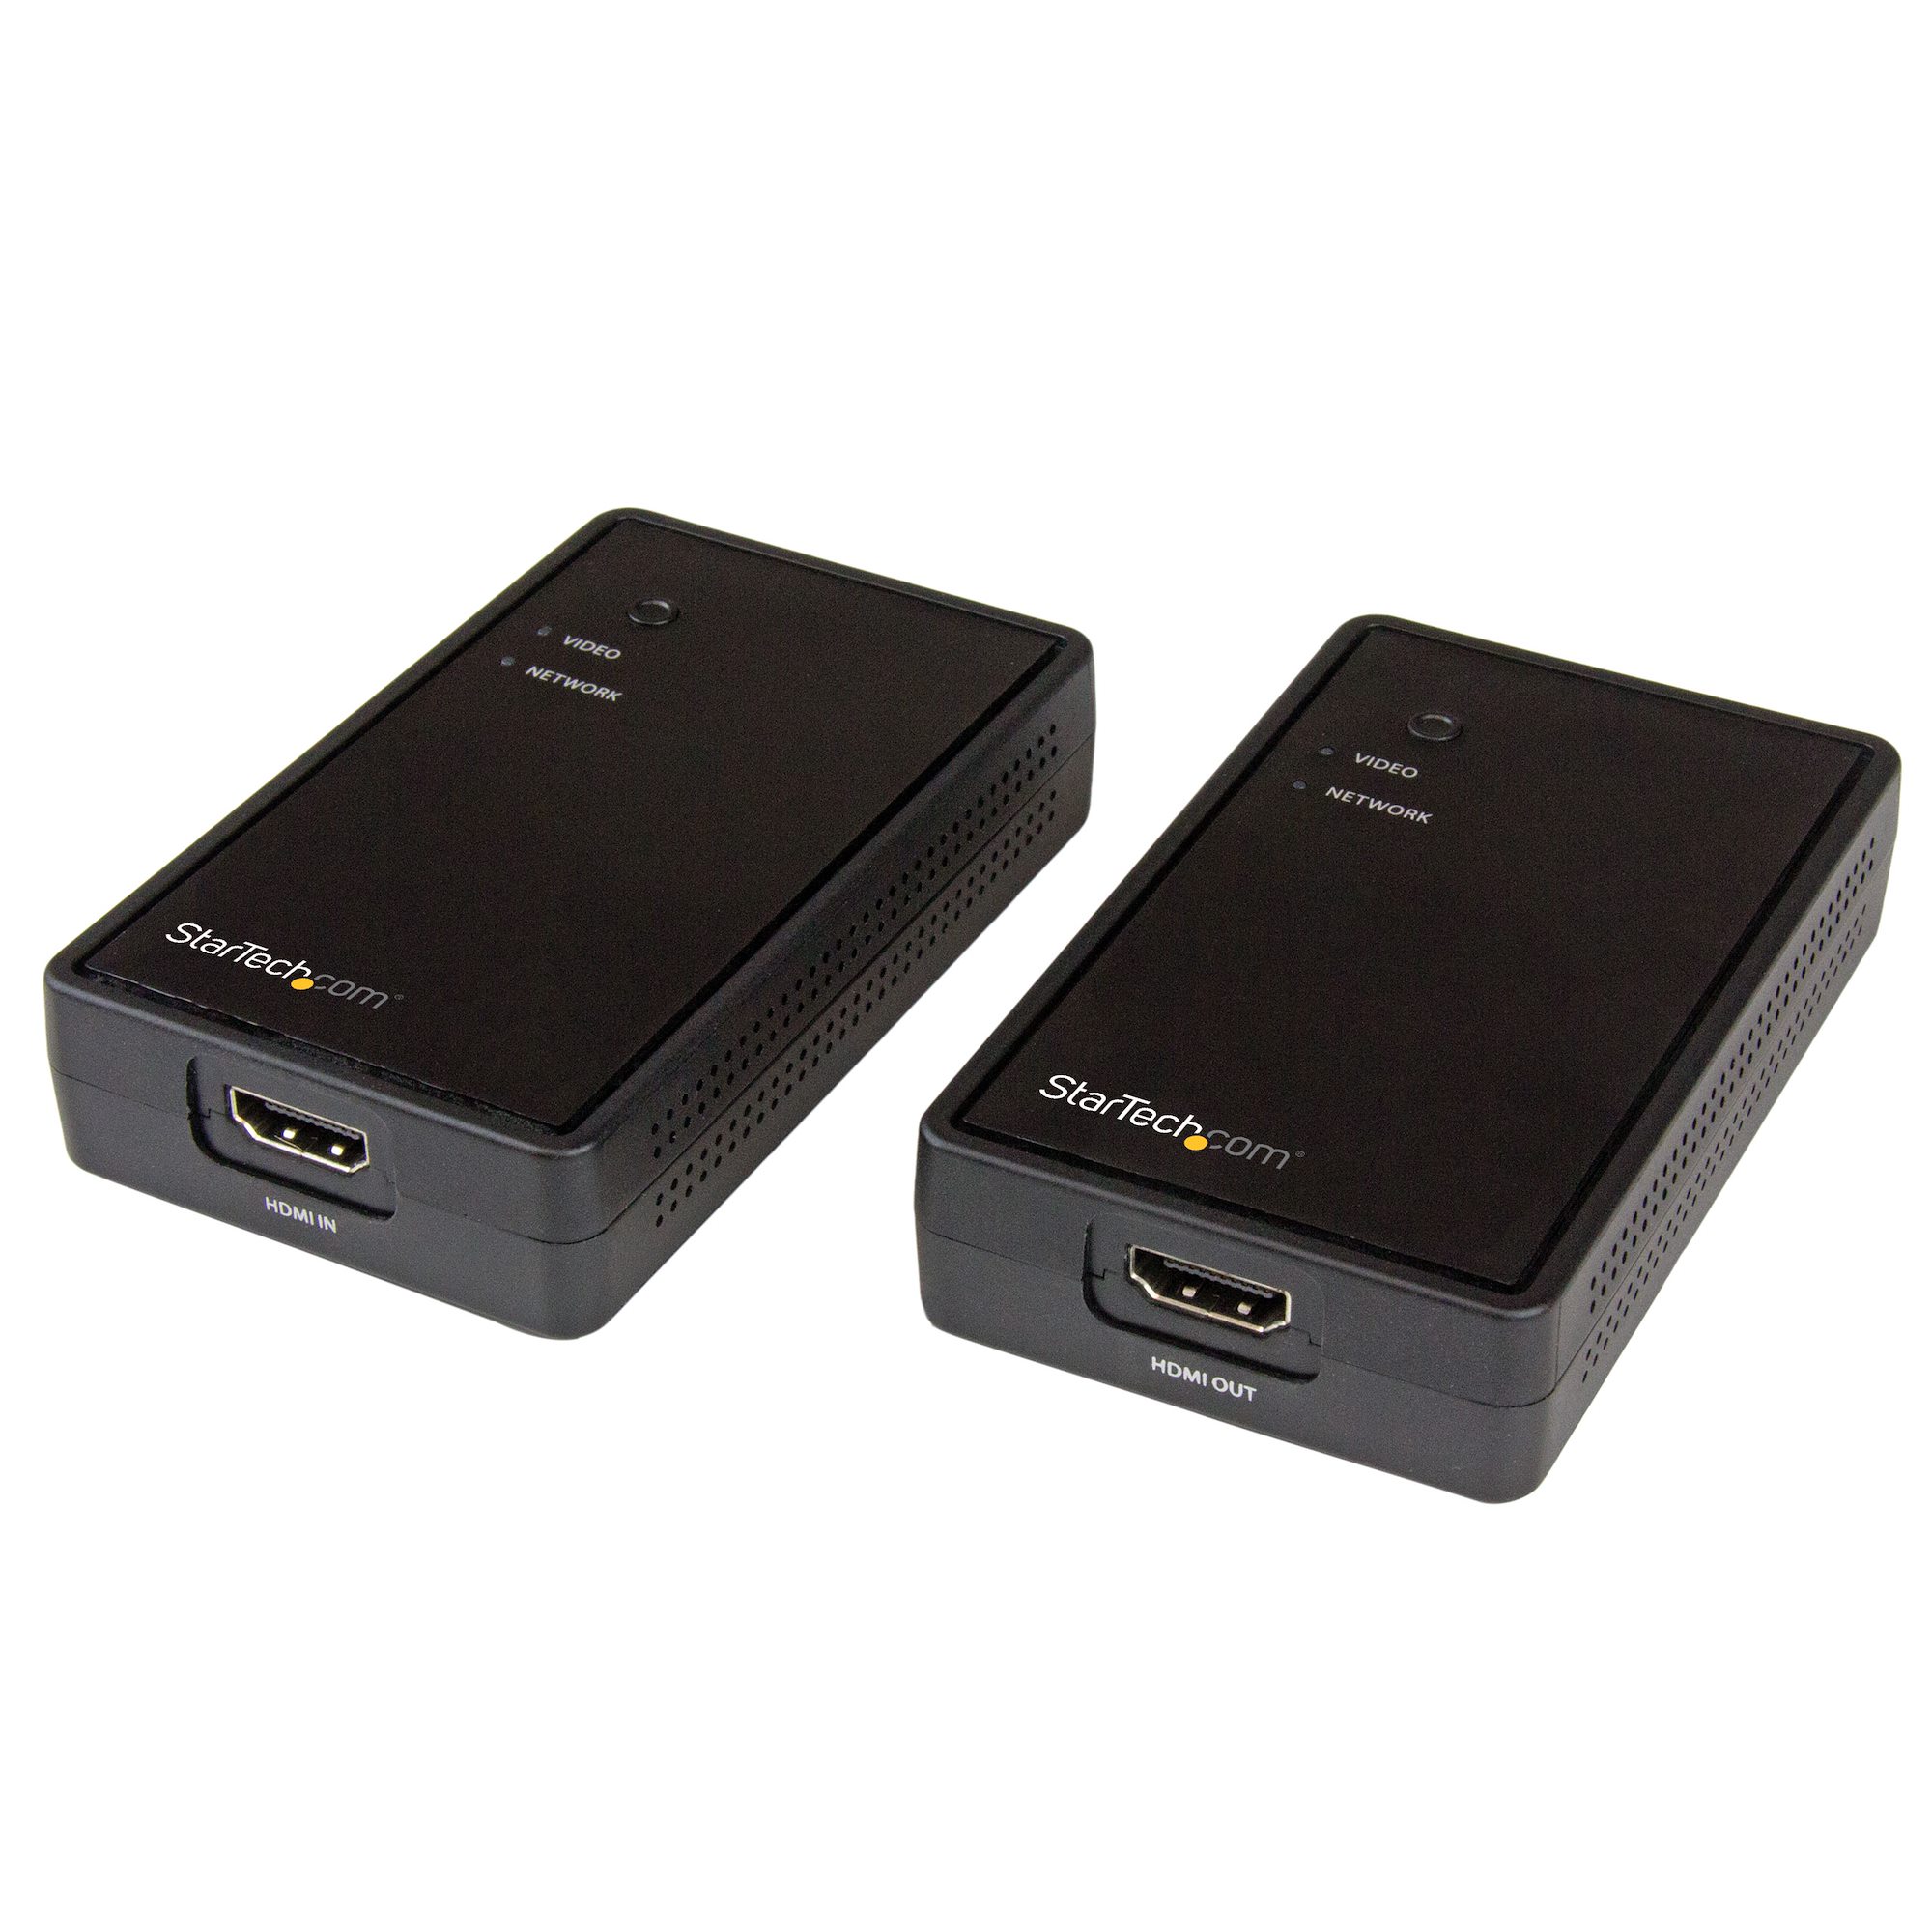 Émetteur-récepteur HDMI sans fil, 50m, dongle d'extension d'affichage,  adaptateur AV pour ordinateur portable, budgétaire TV, moniteur